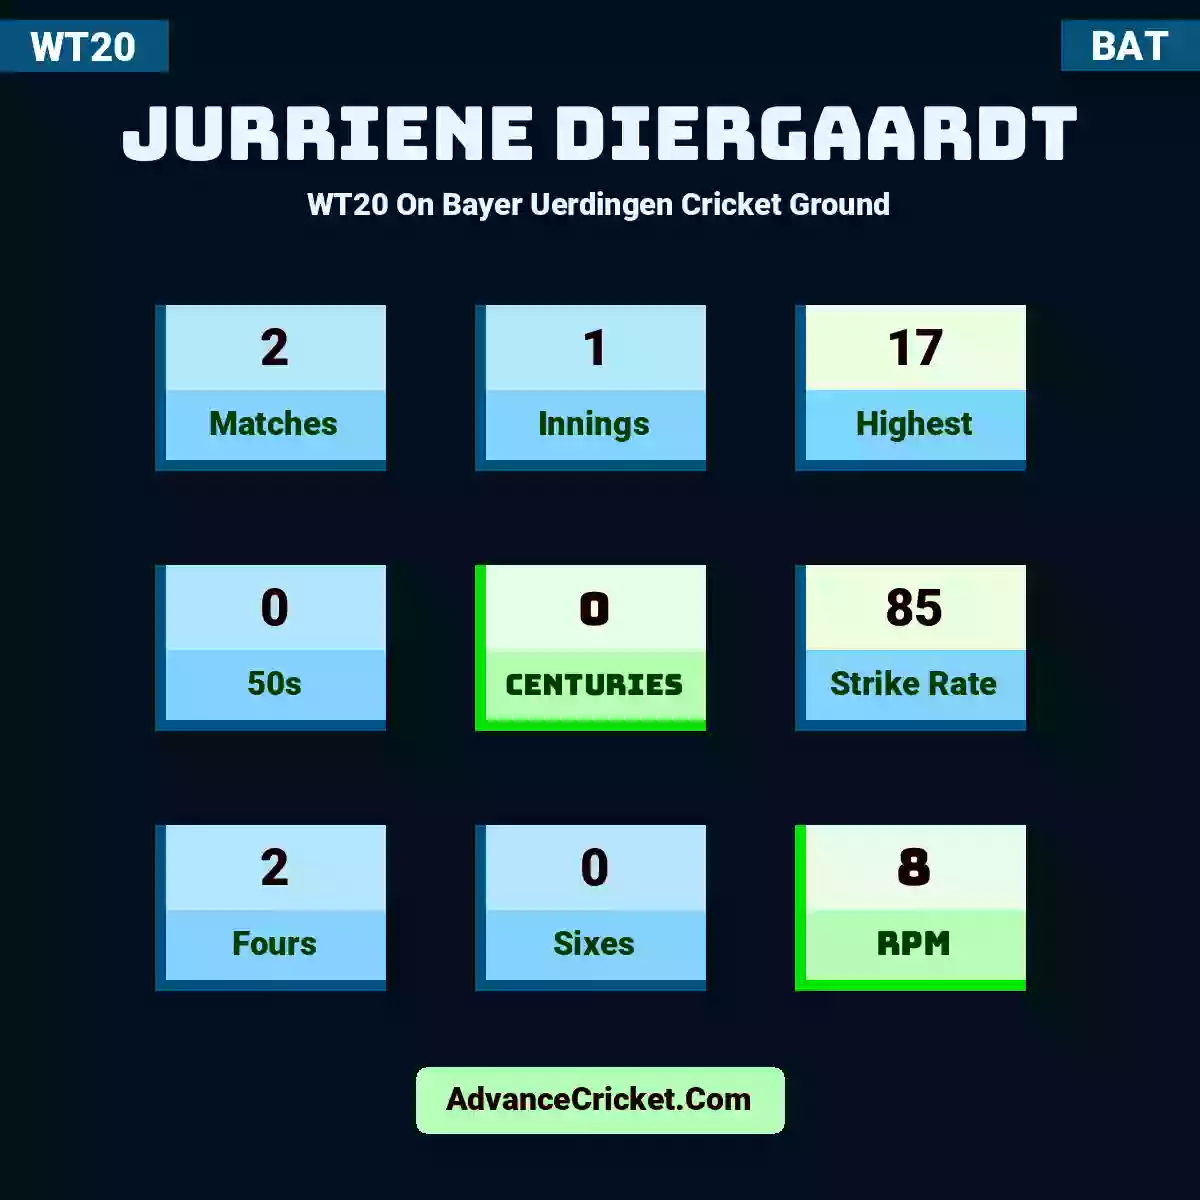 Jurriene Diergaardt WT20  On Bayer Uerdingen Cricket Ground, Jurriene Diergaardt played 2 matches, scored 17 runs as highest, 0 half-centuries, and 0 centuries, with a strike rate of 85. J.Diergaardt hit 2 fours and 0 sixes, with an RPM of 8.